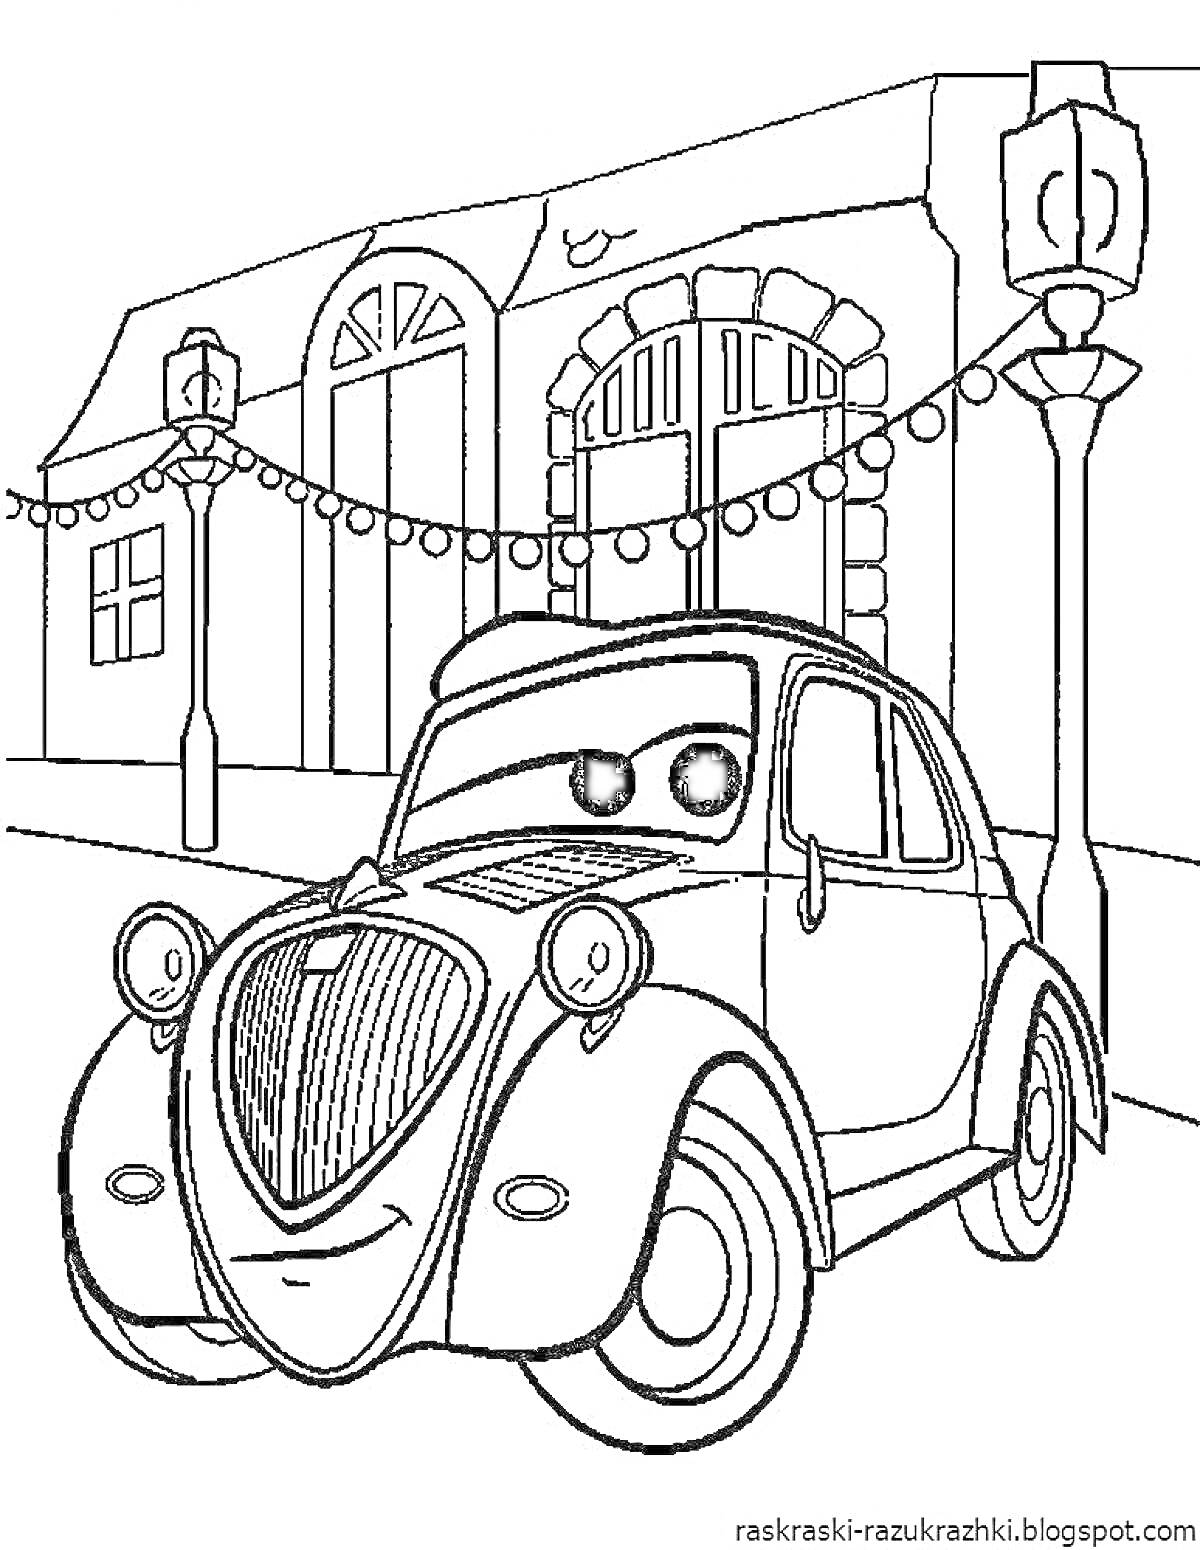 Раскраска Машина с большими глазами на фоне здания с арками и лампами, украшенного гирляндами лампочек